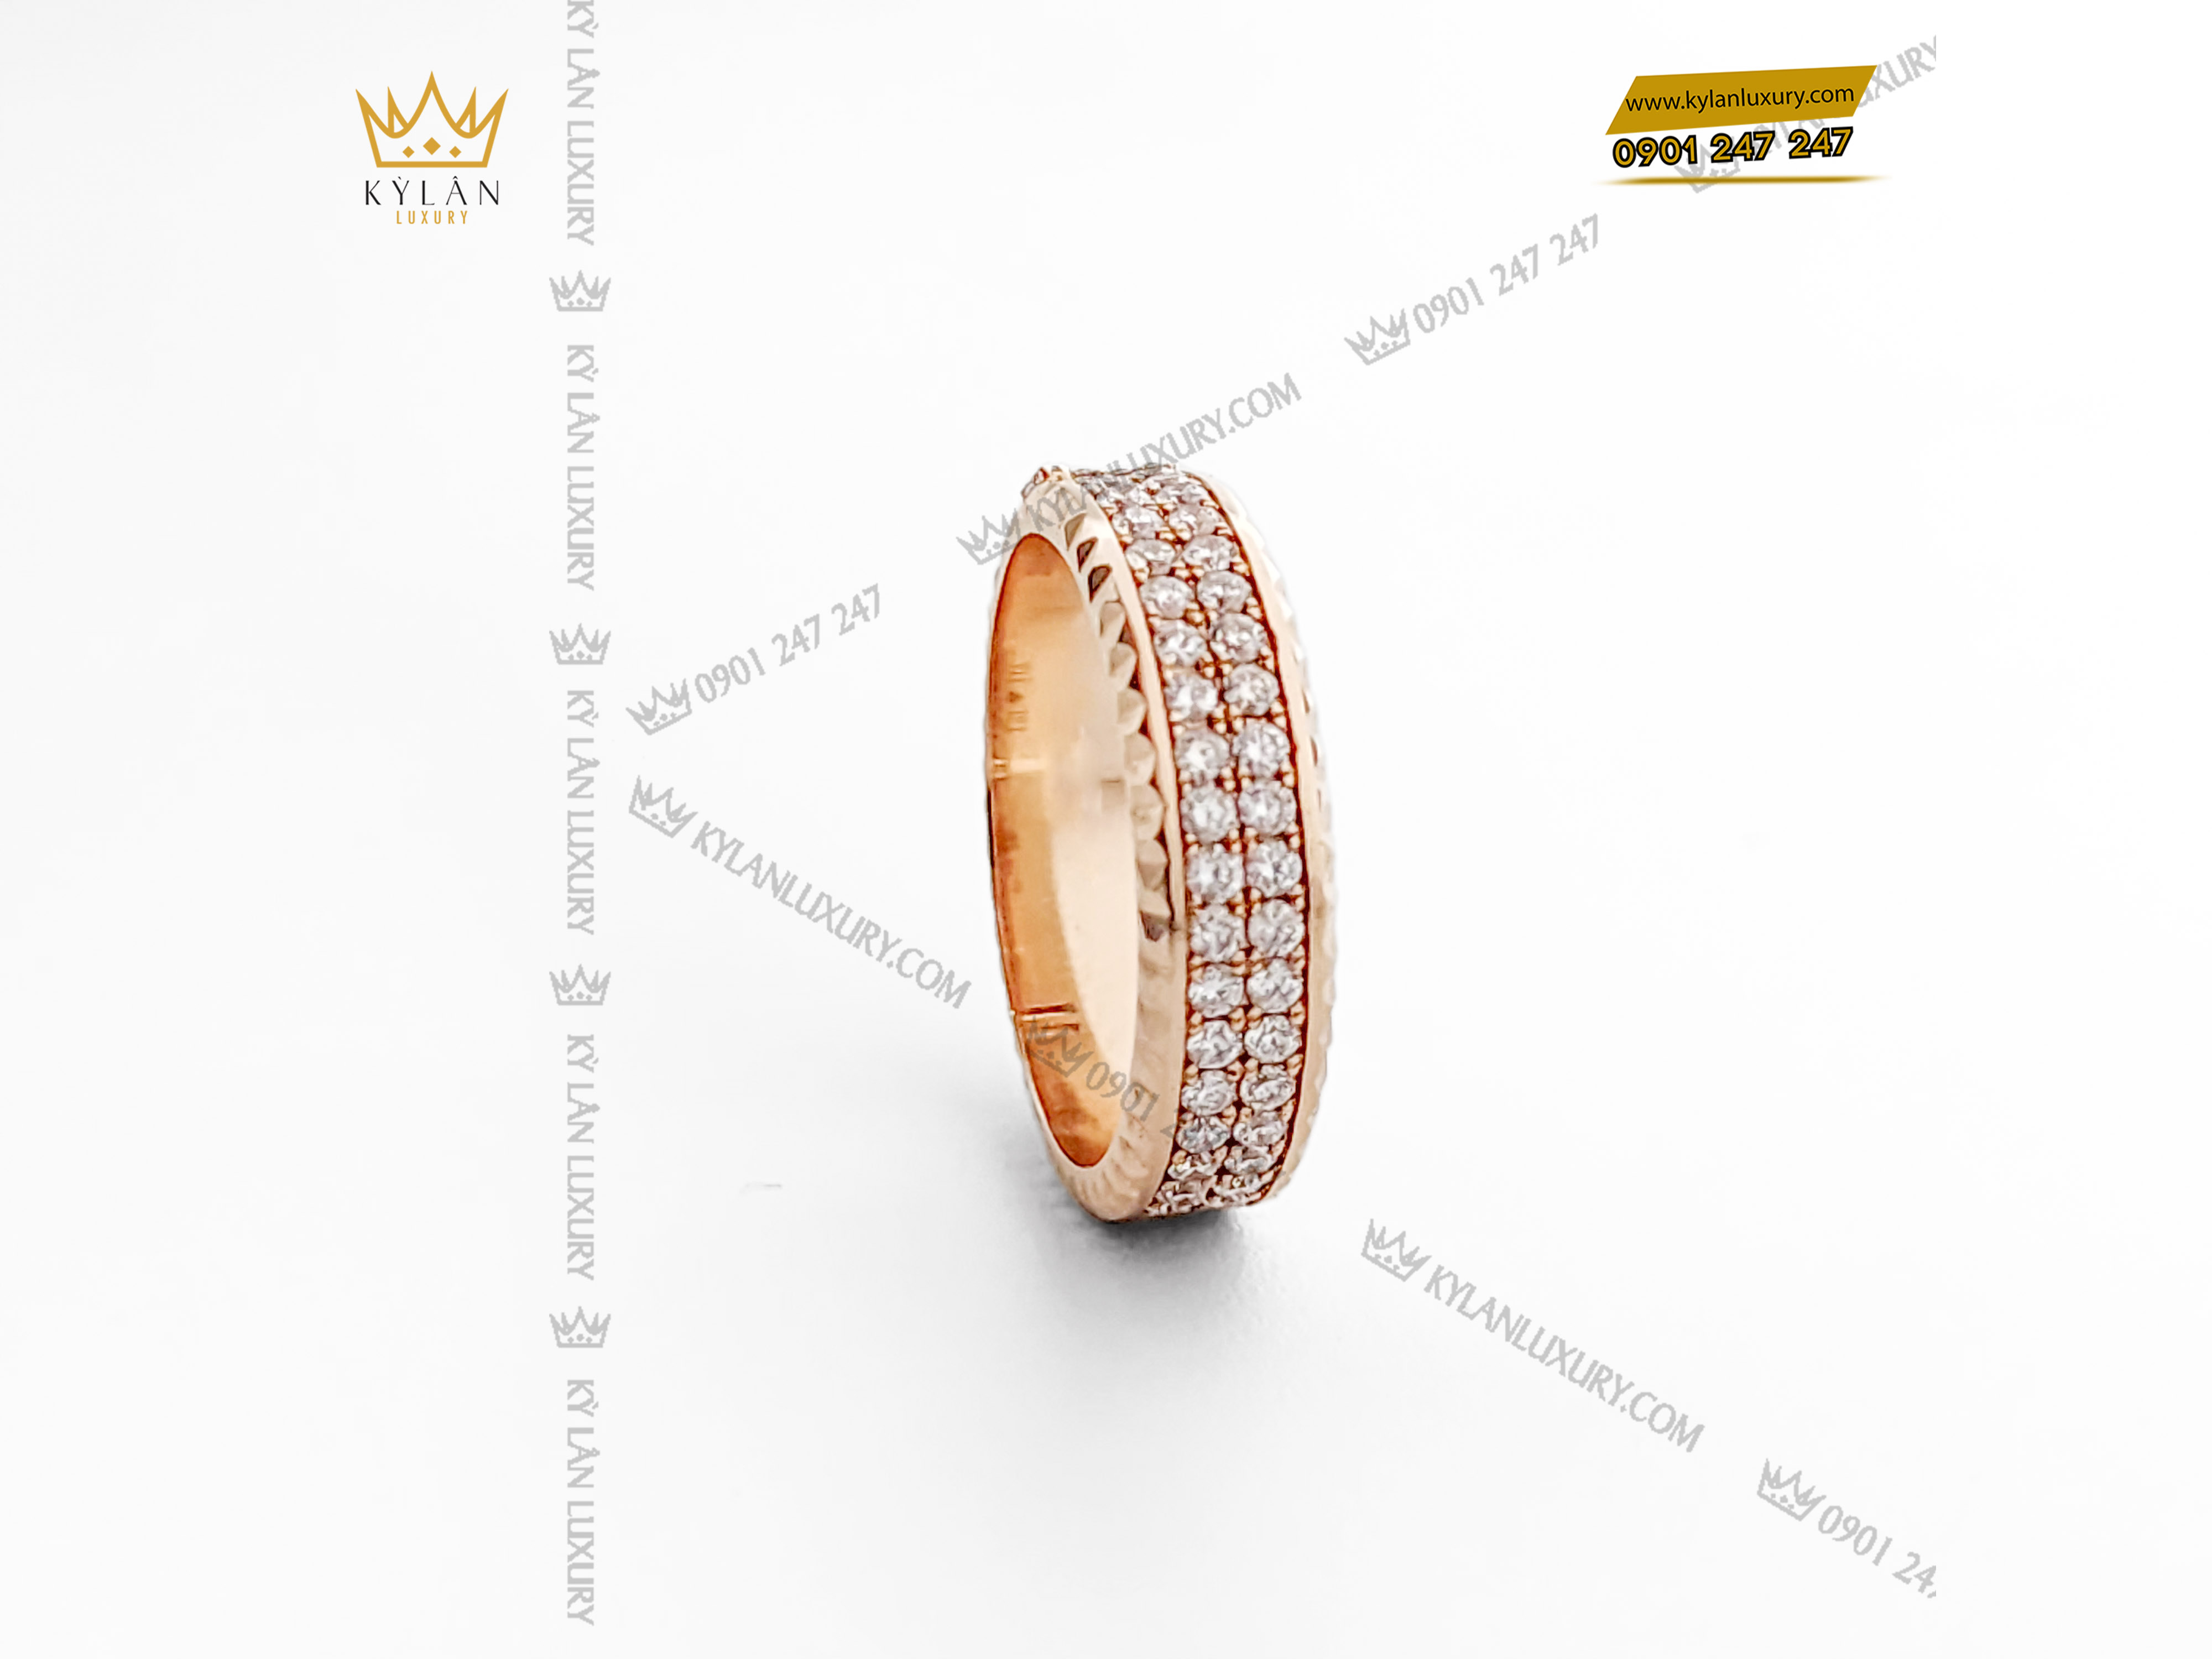 Từng viên kim cương được sắp xếp tỉ mỉ đến từng viên một mang đến sự hoàn hảo nhất cho quý khách hàng